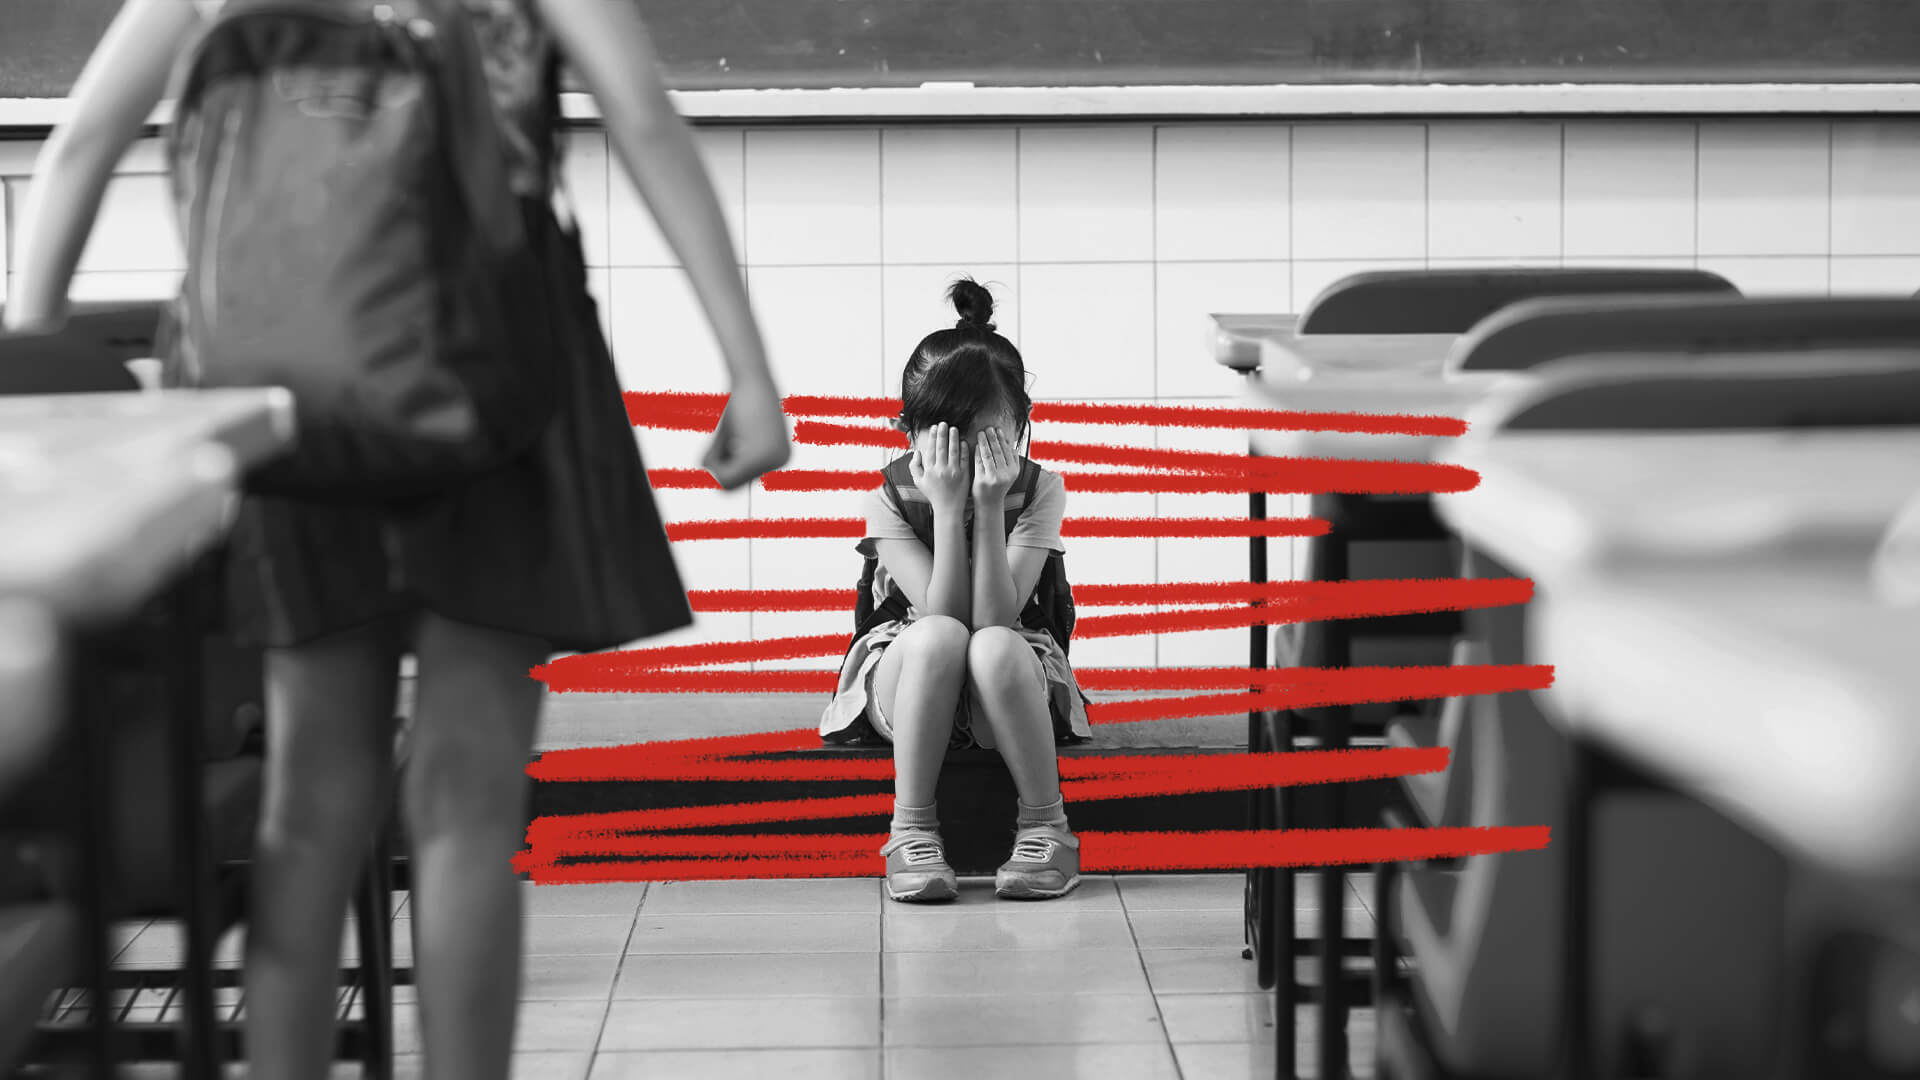 Uma menina está sentada no chão de uma sala de aula, escondendo o rosto com as mãos. A imagem está em preto e branco e possui rabiscos vermelhos.